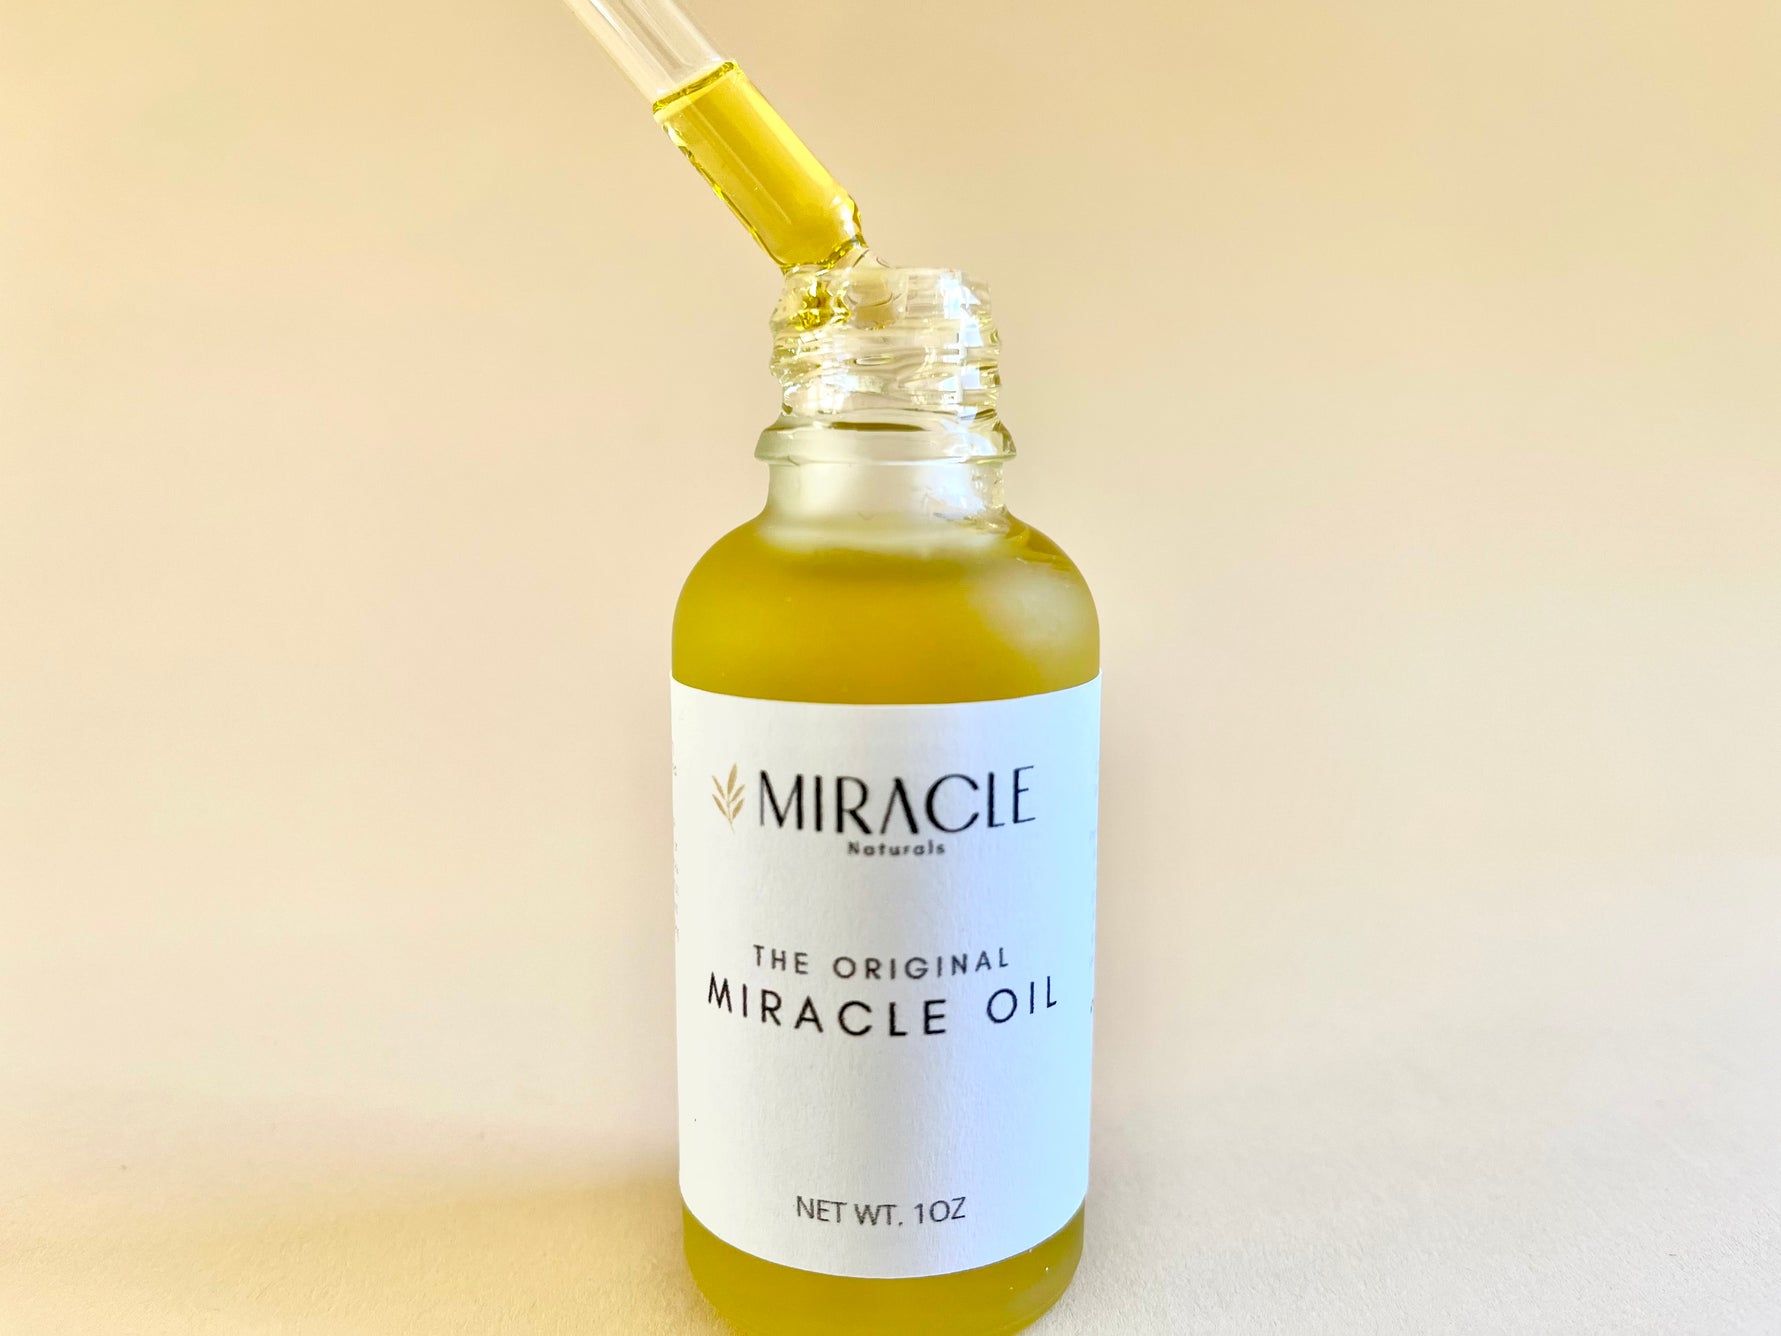 #1 Bestselling Luxury Miracle Oil